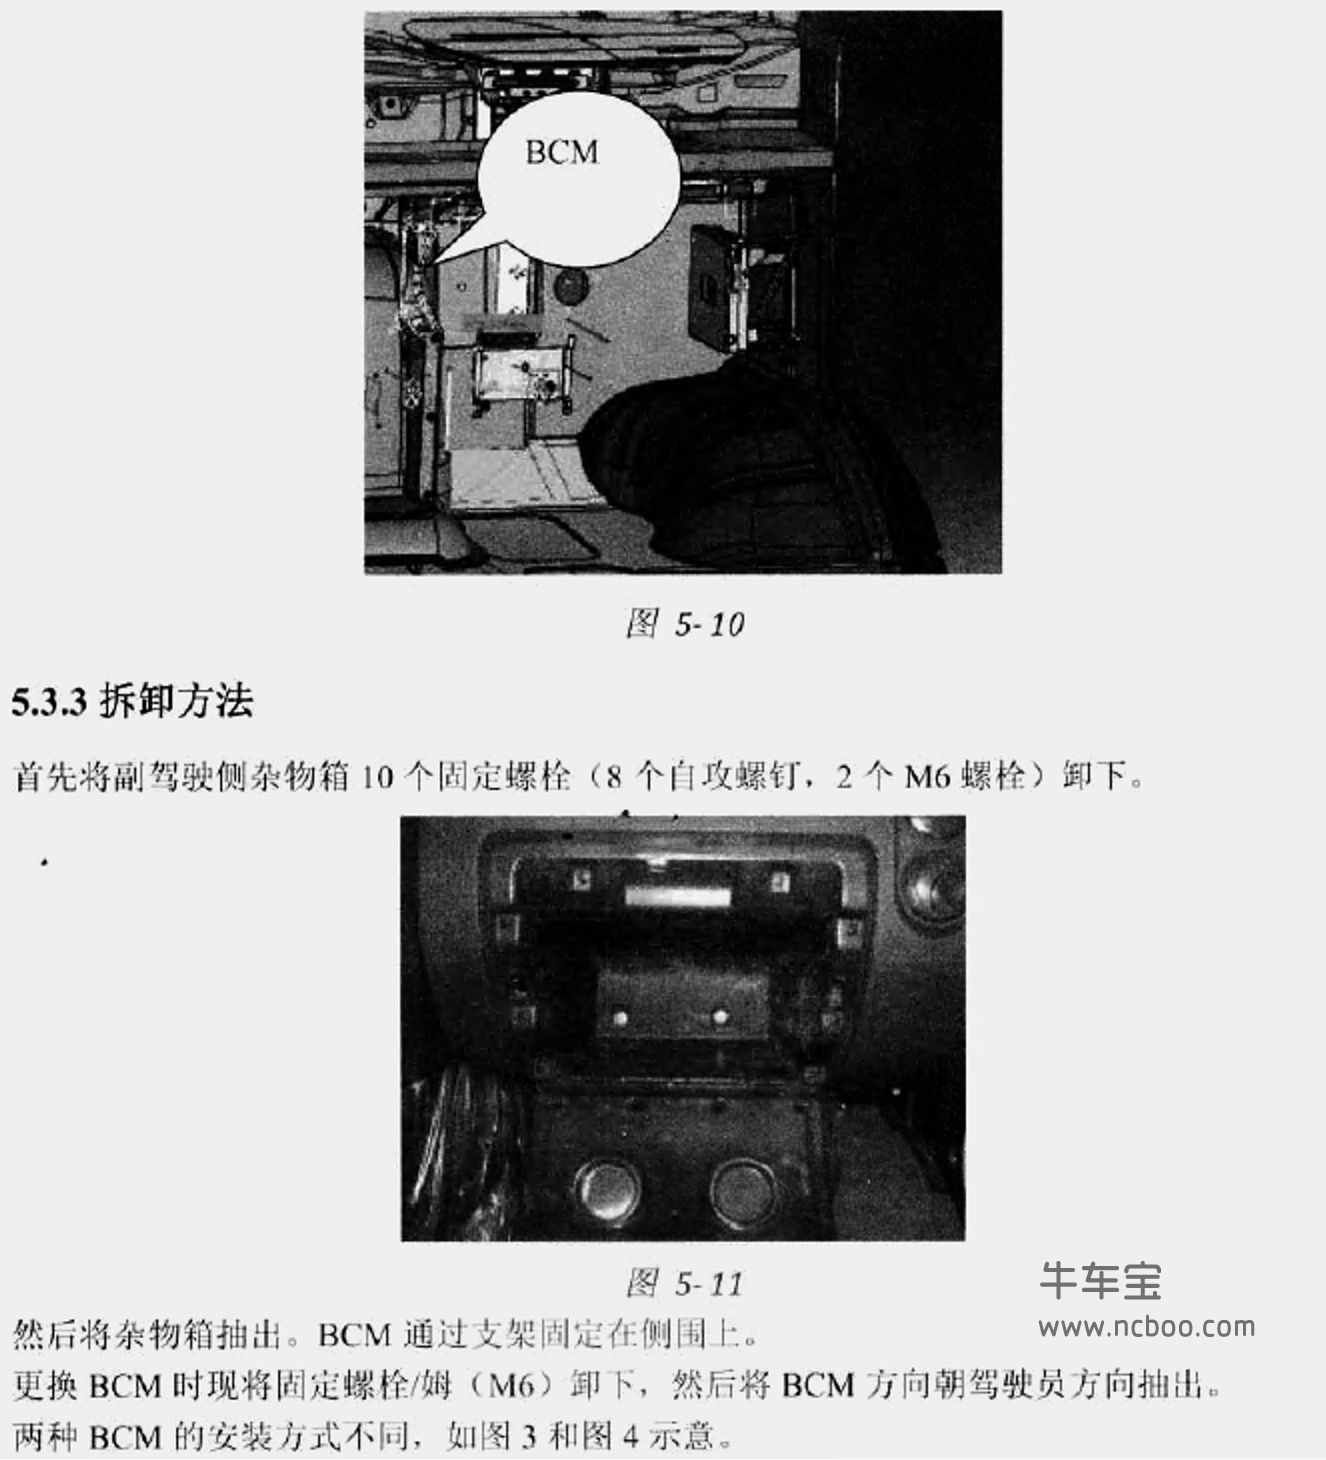 2010-2011款南京依维柯Power Daily原厂维修手册(含电路图)下载